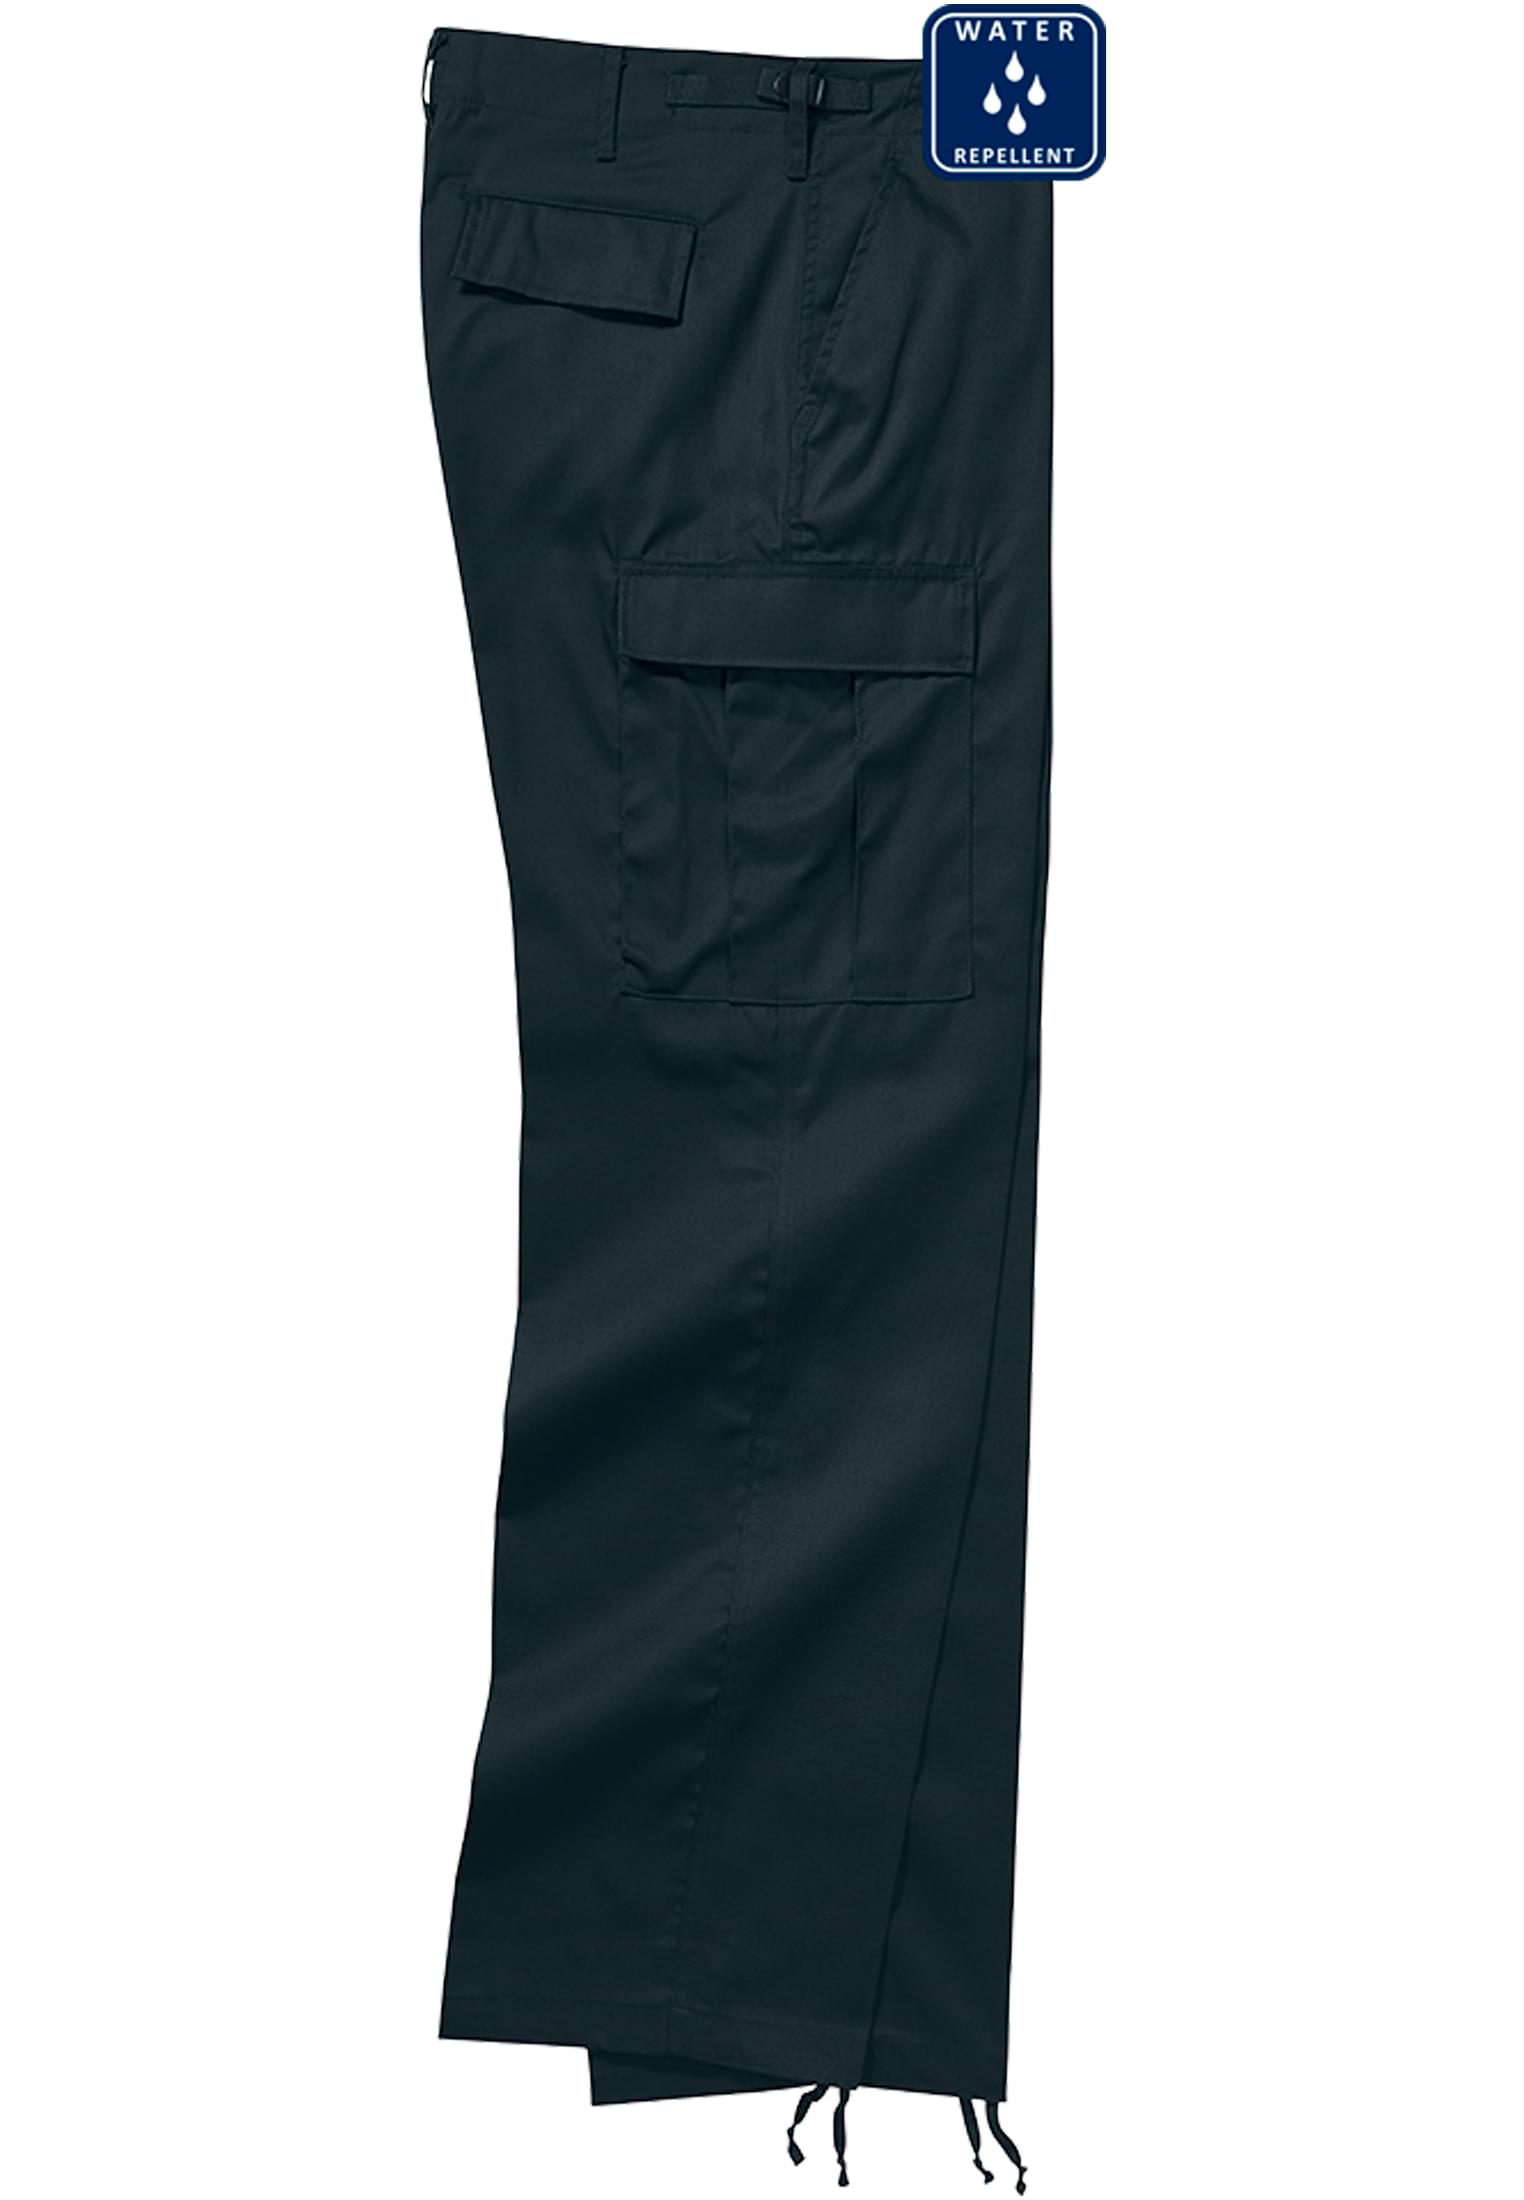 Hosen US Ranger Cargo Pants in Farbe black